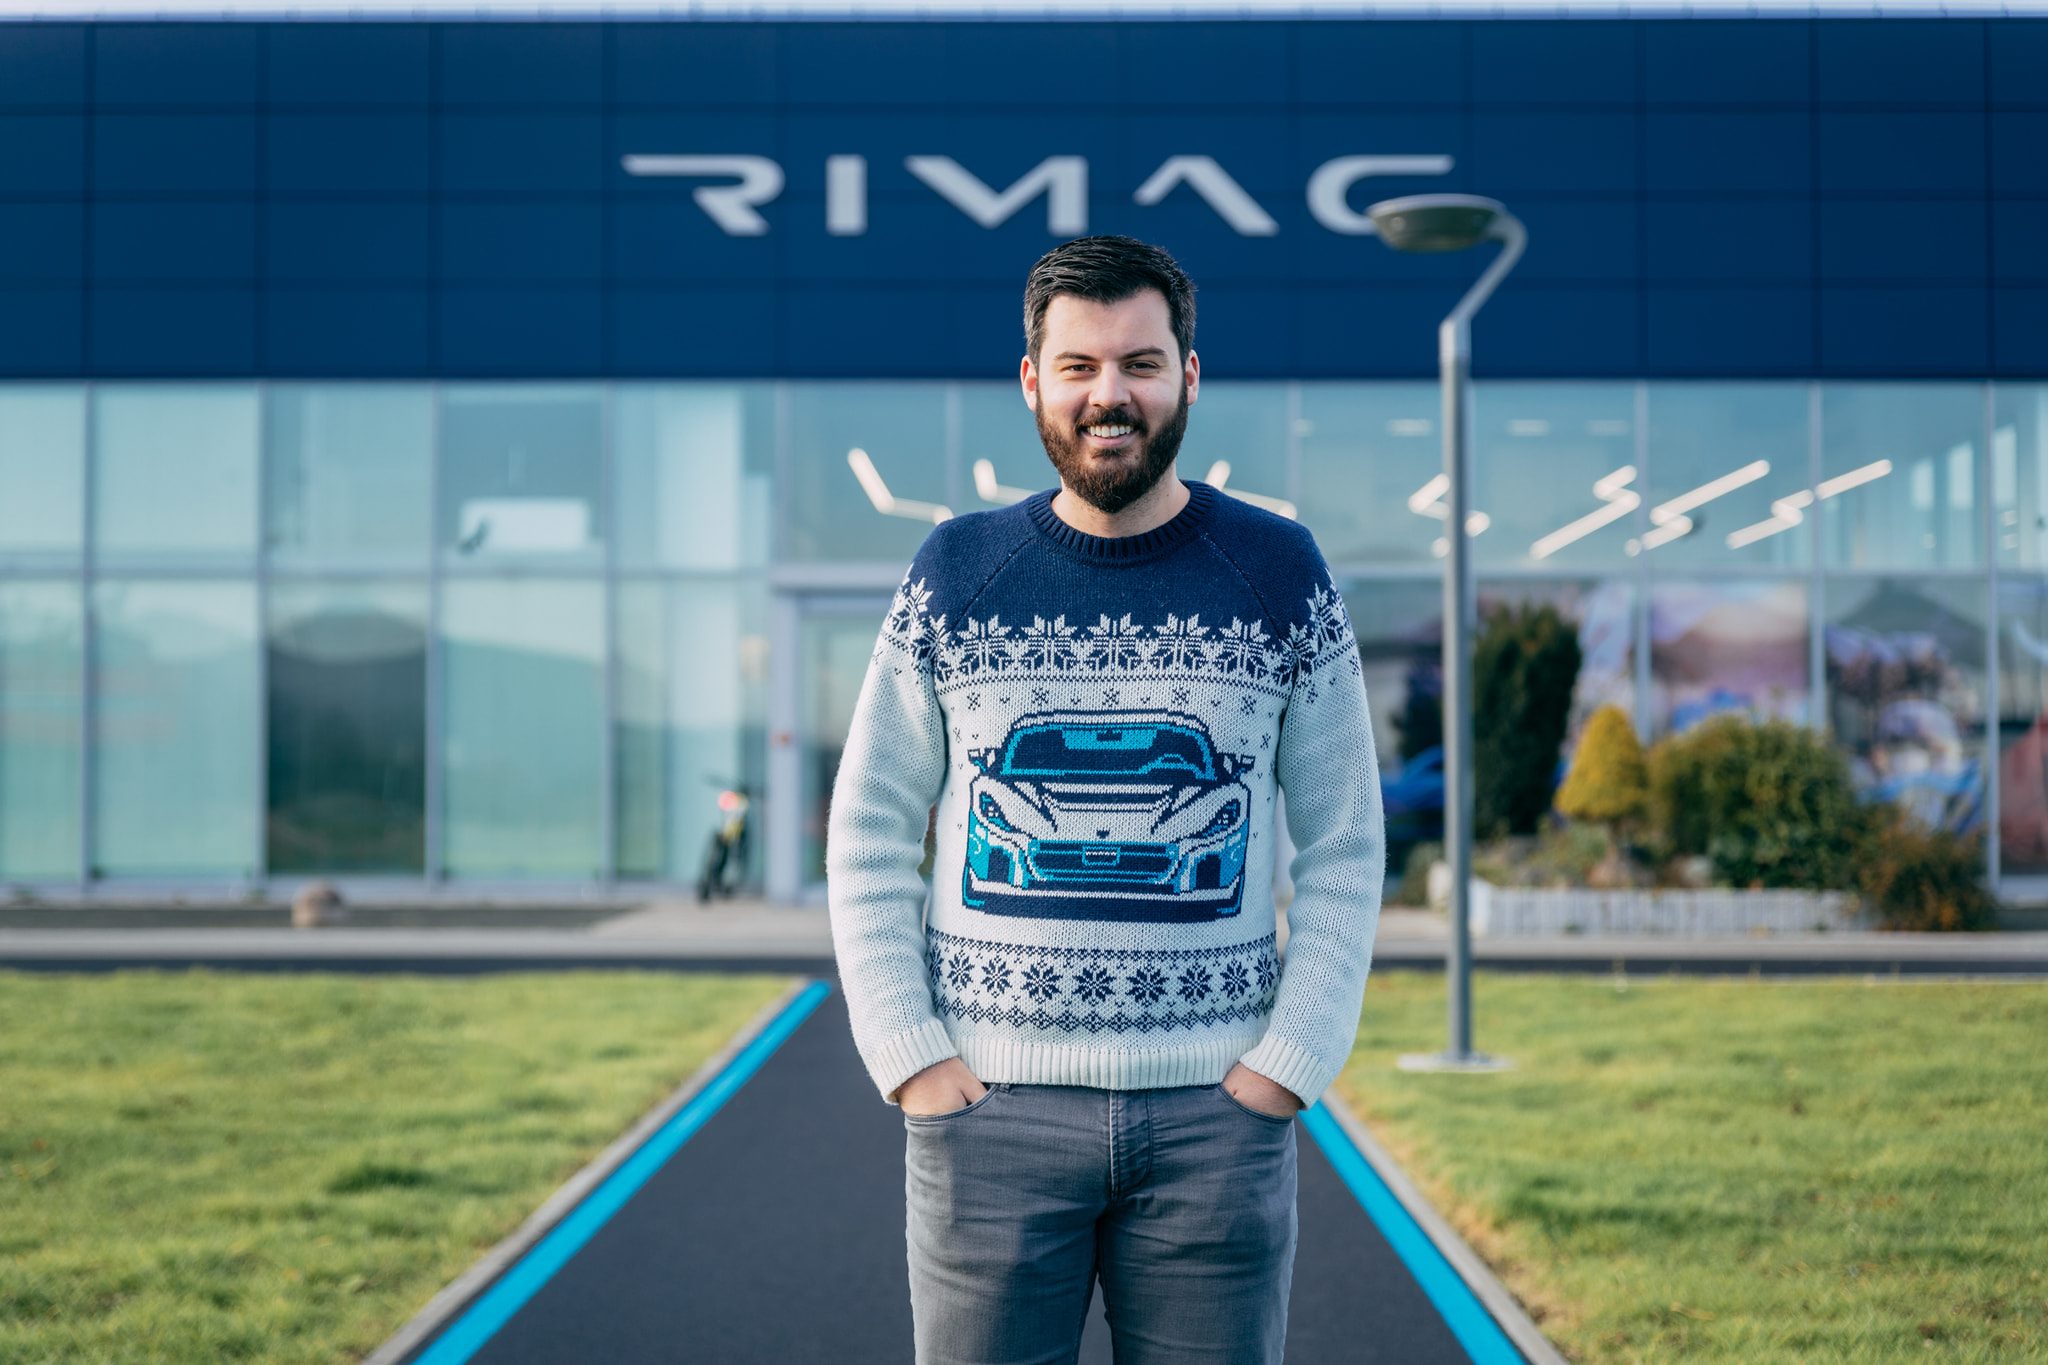 El croata Mate Rimac es otro empresario que tuvo la visión y la audacia de Elon Musk para desarrollar una marca específica de autos eléctricos de alta performance. Su éxito parece seguro de momento